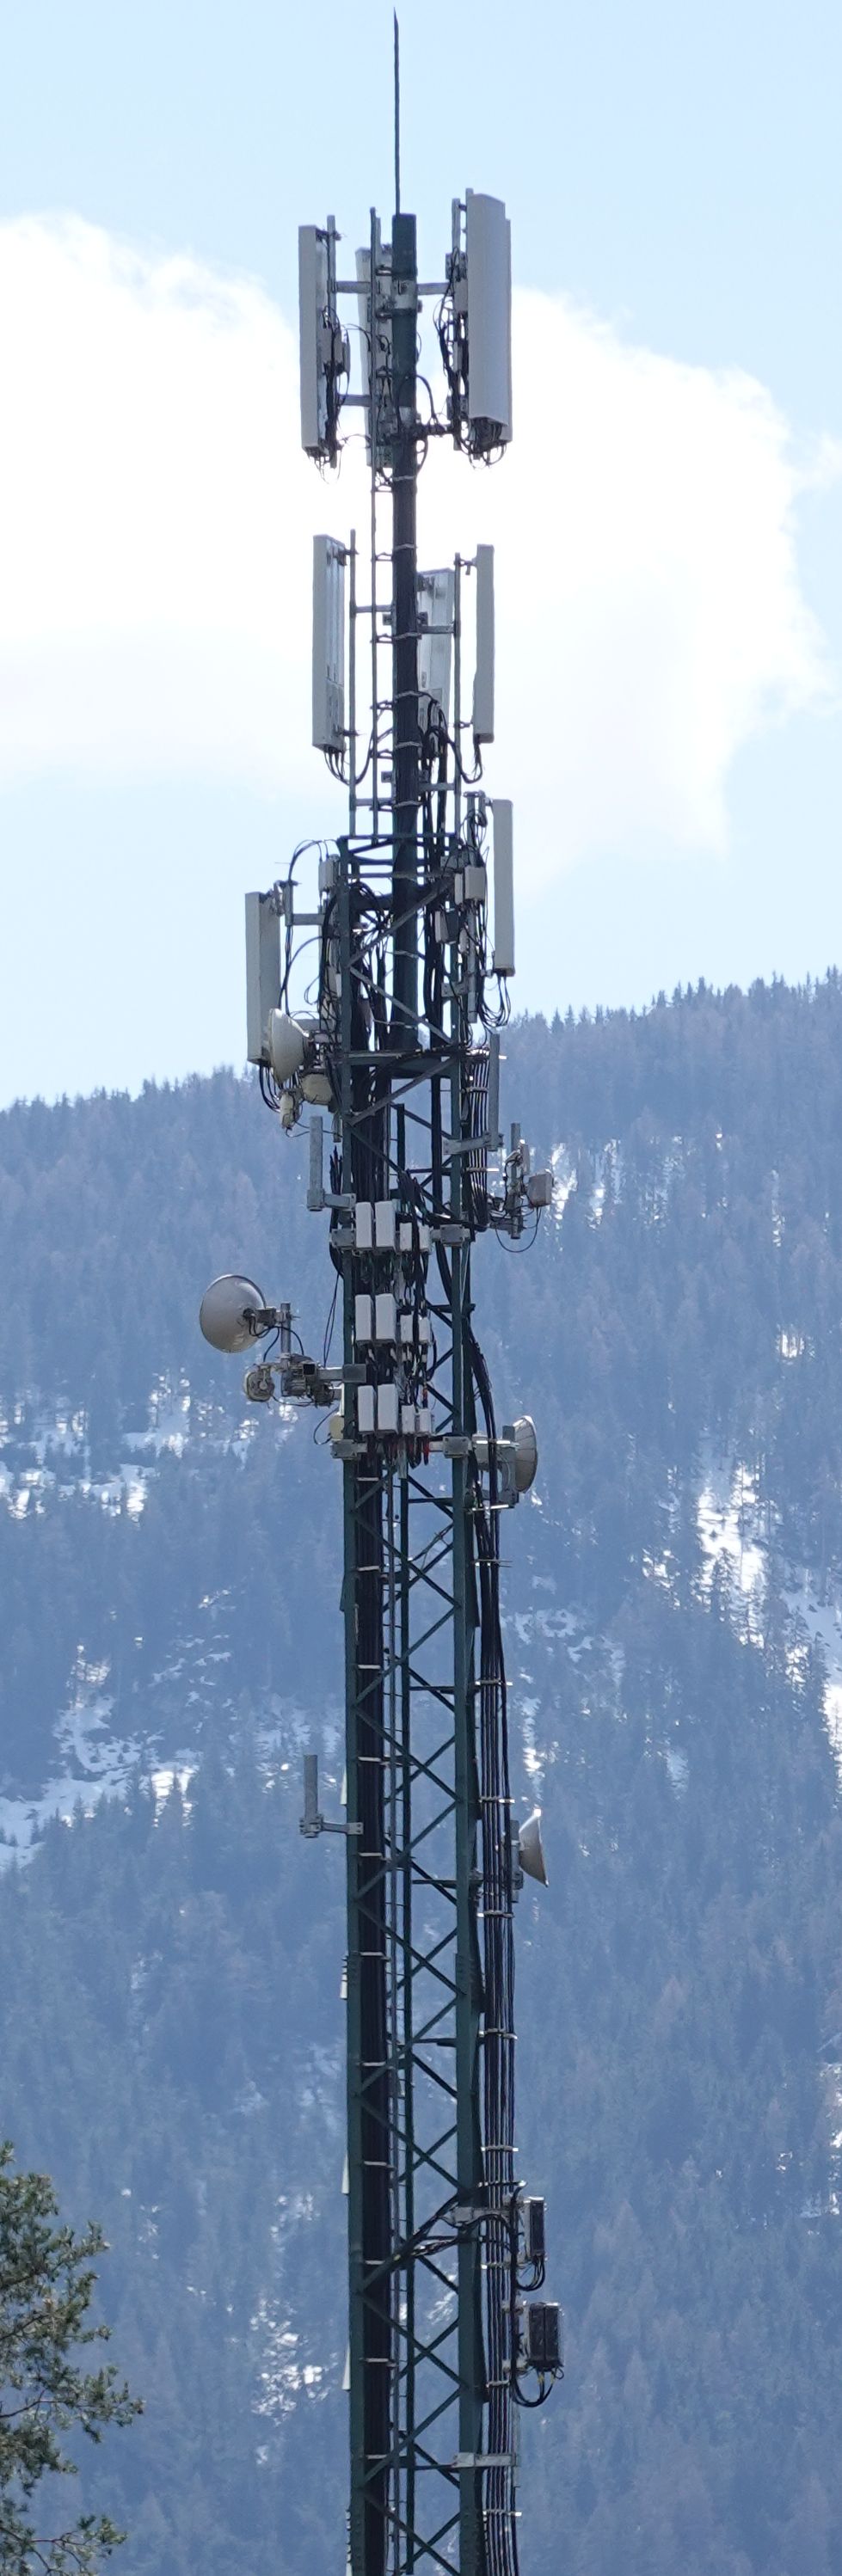 Die Antennen im April 2021. Vodafone hat den Platz von H3G eingenommen und einen 4. Sektor hinzugefügt.